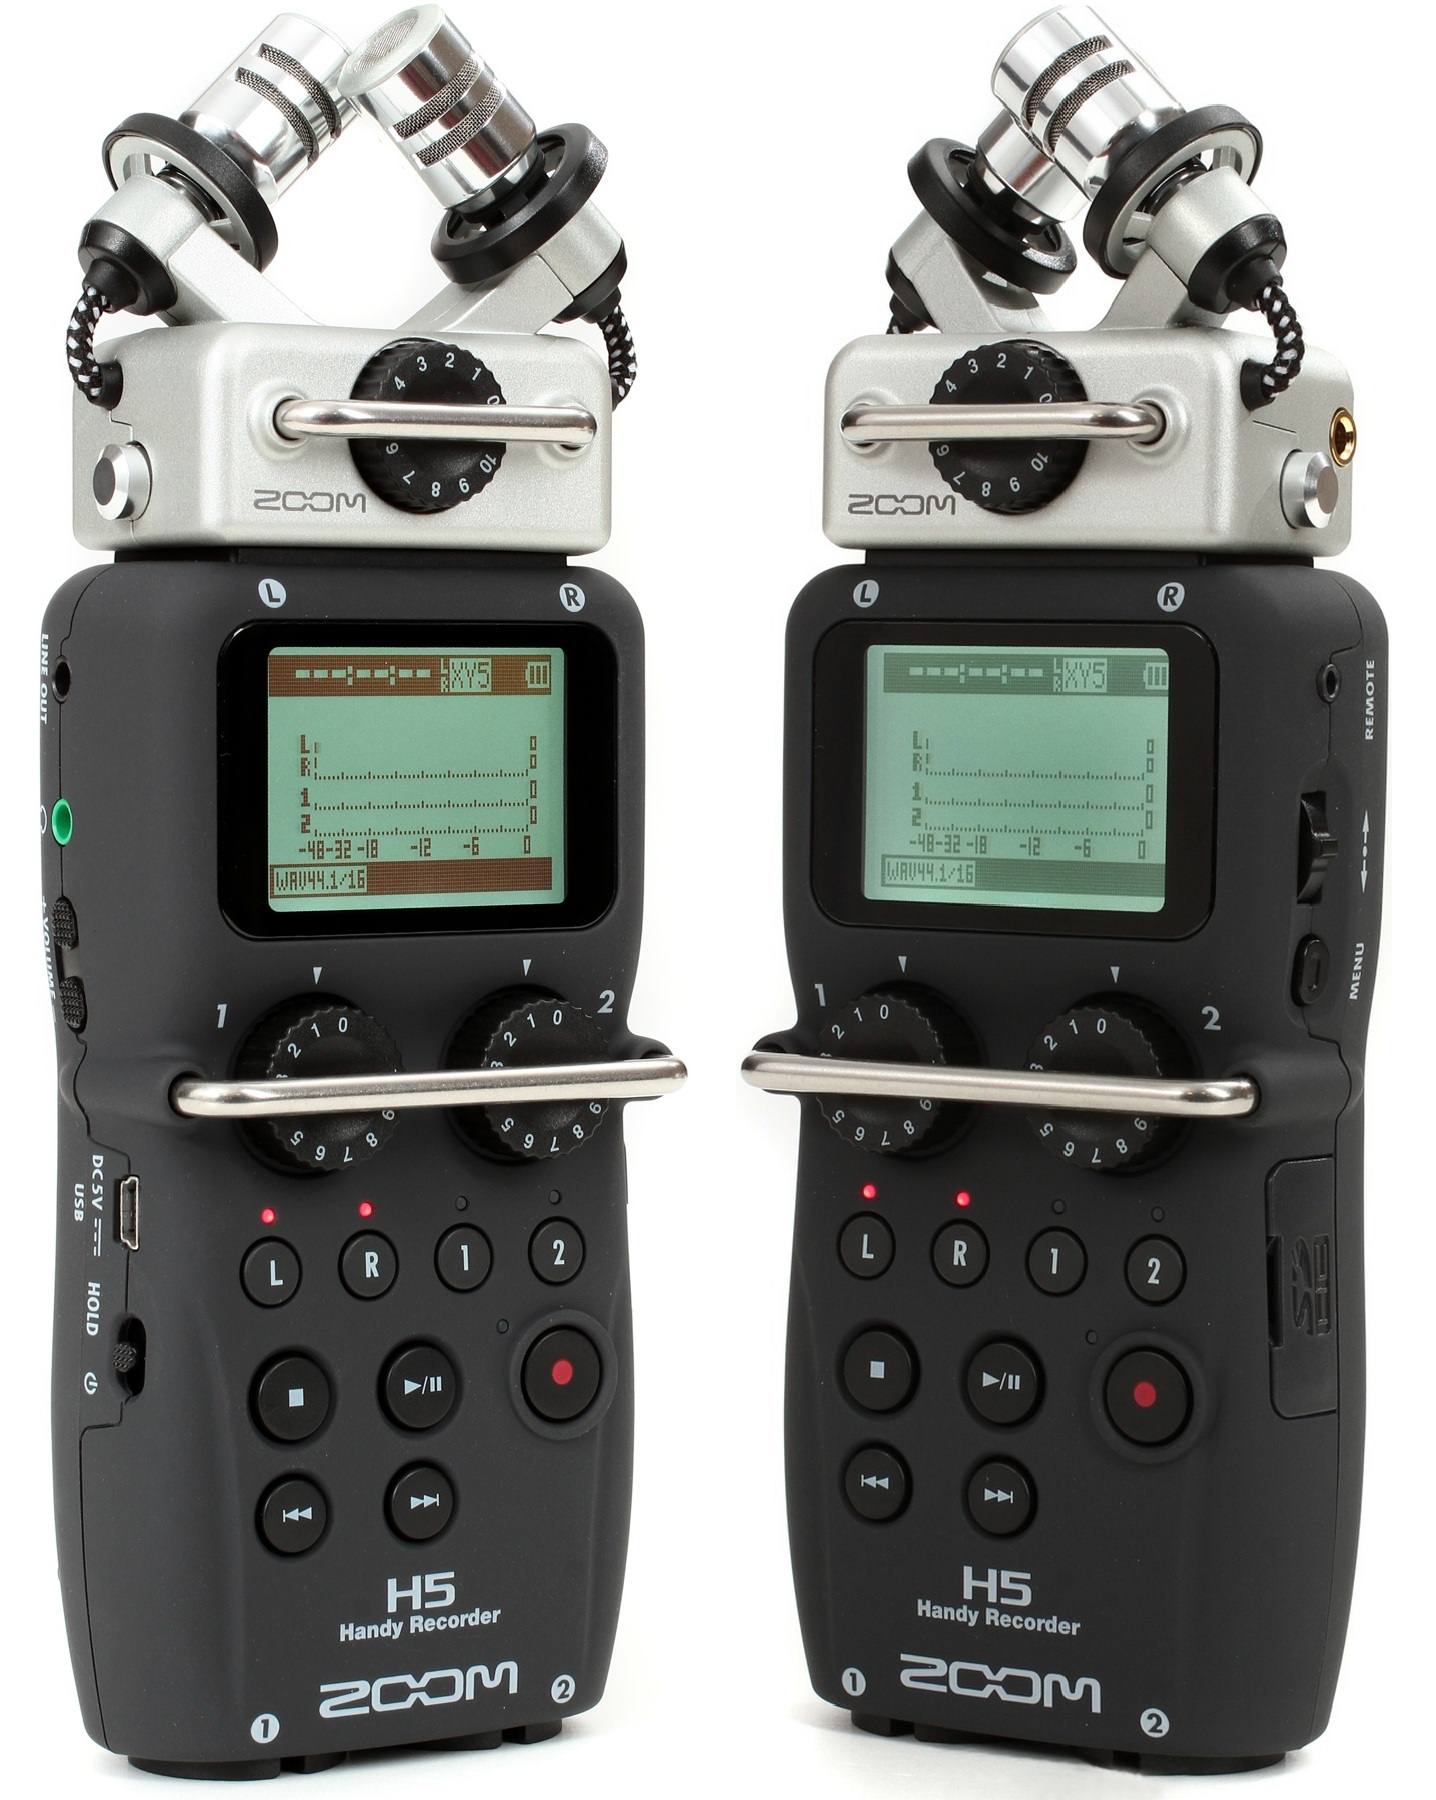 رکوردر ضبط کننده صدا دستی زوم مدل H5